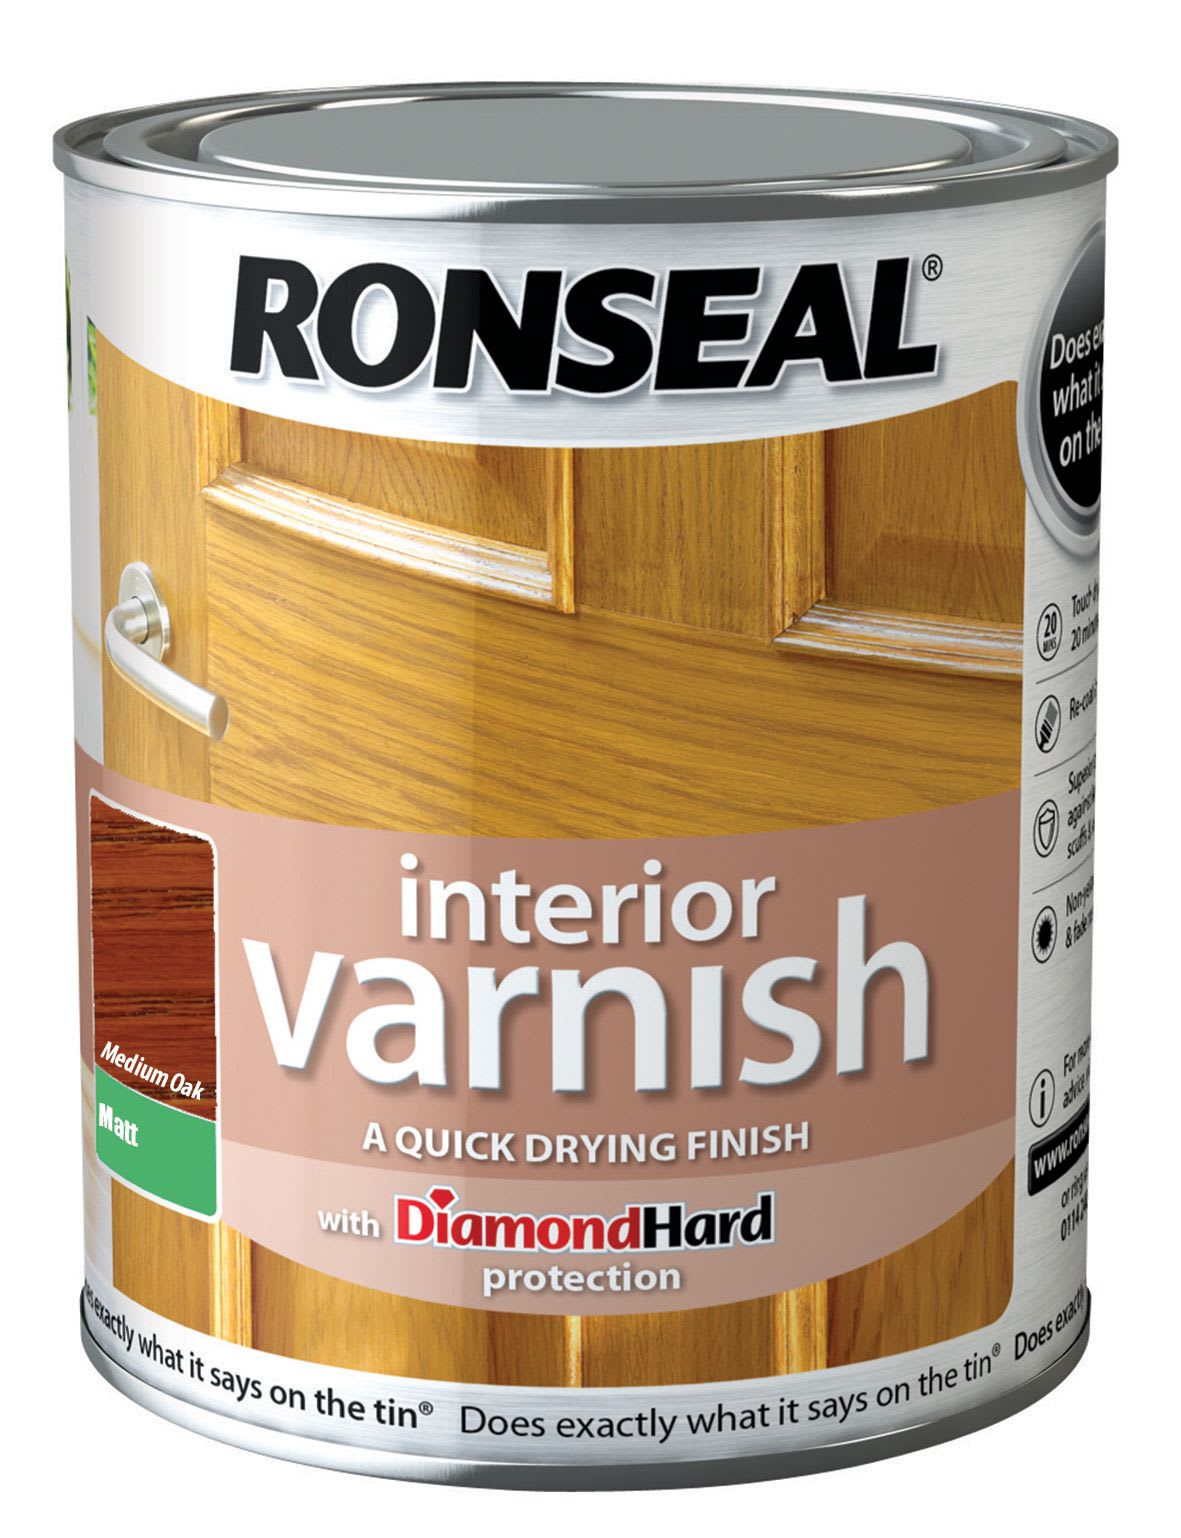 Ronseal Interior Varnish - Matt Medium Oak 750ml